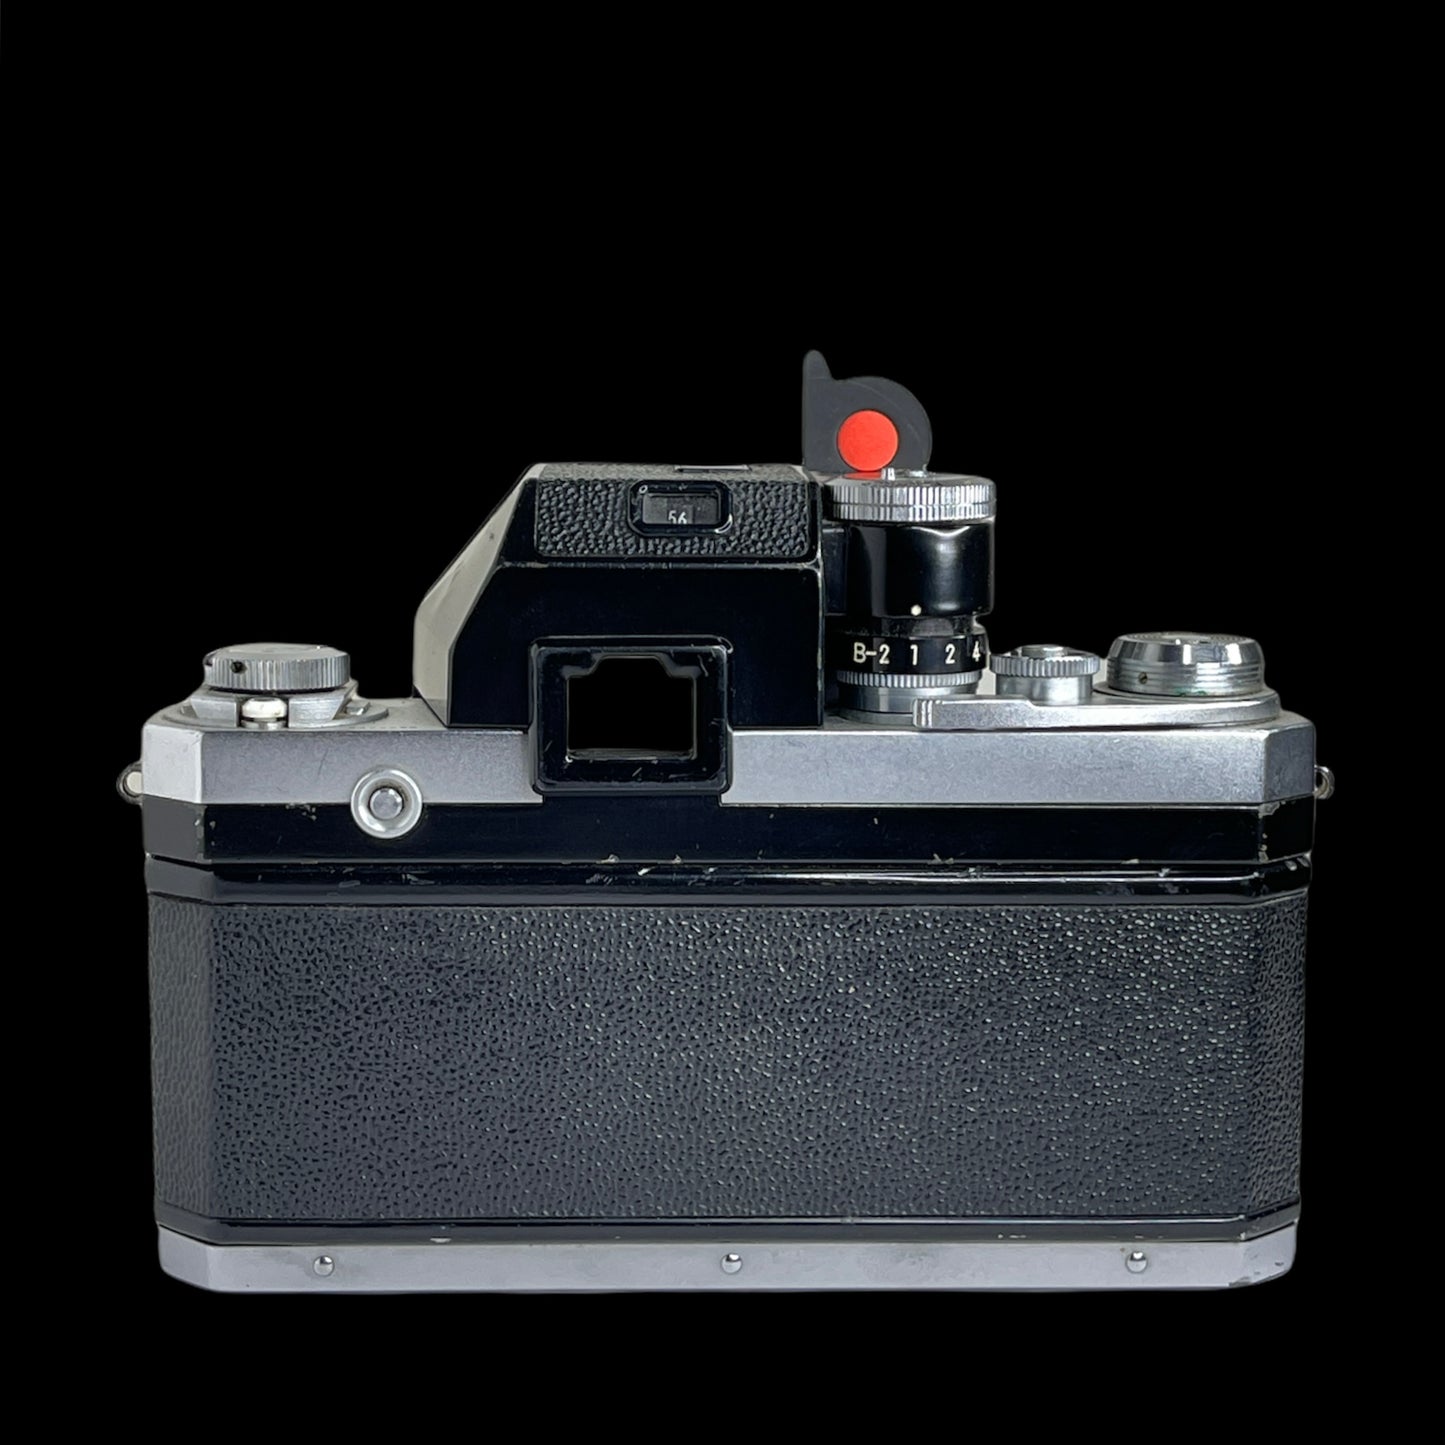 Nikon F Flag Photomic Finder w/50mm f/1.4 Auto B#6473598 L#402154